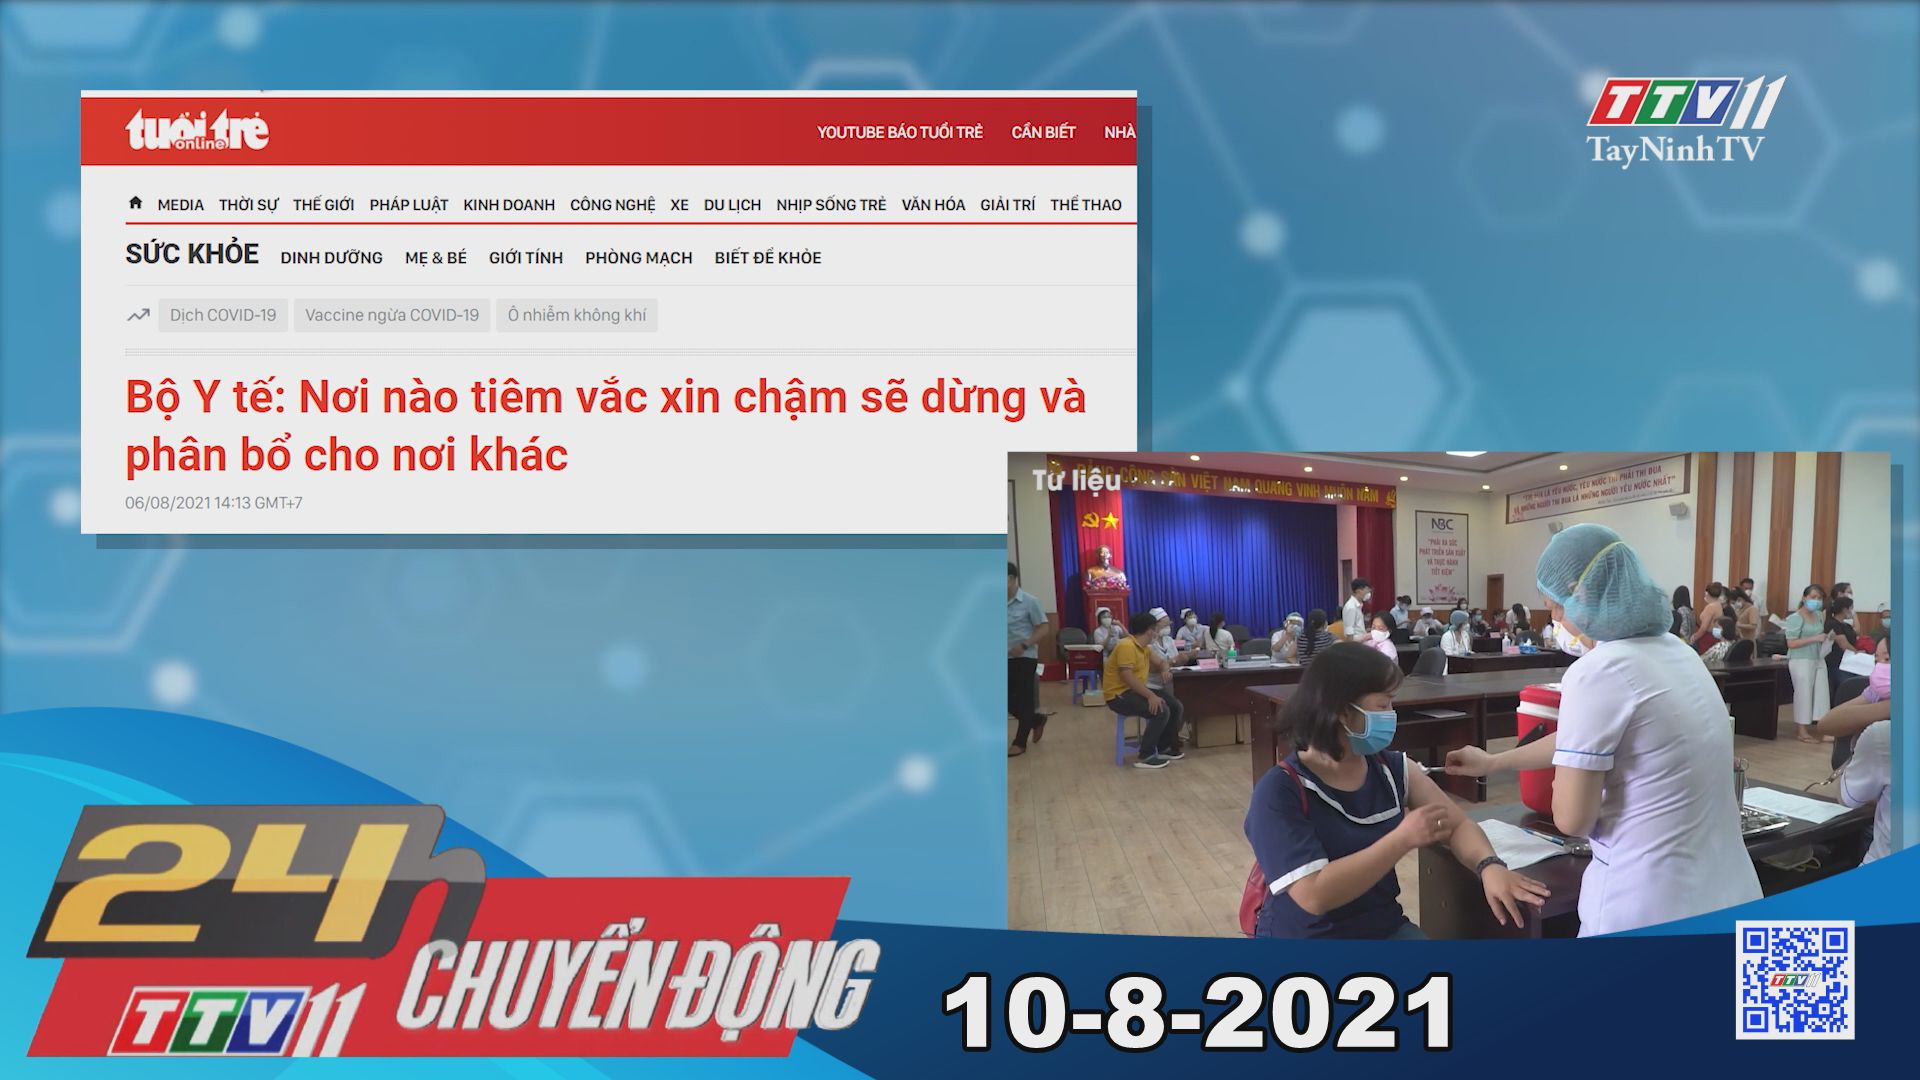 24h Chuyển động 10-8-2021 | Tin tức hôm nay | TayNinhTV